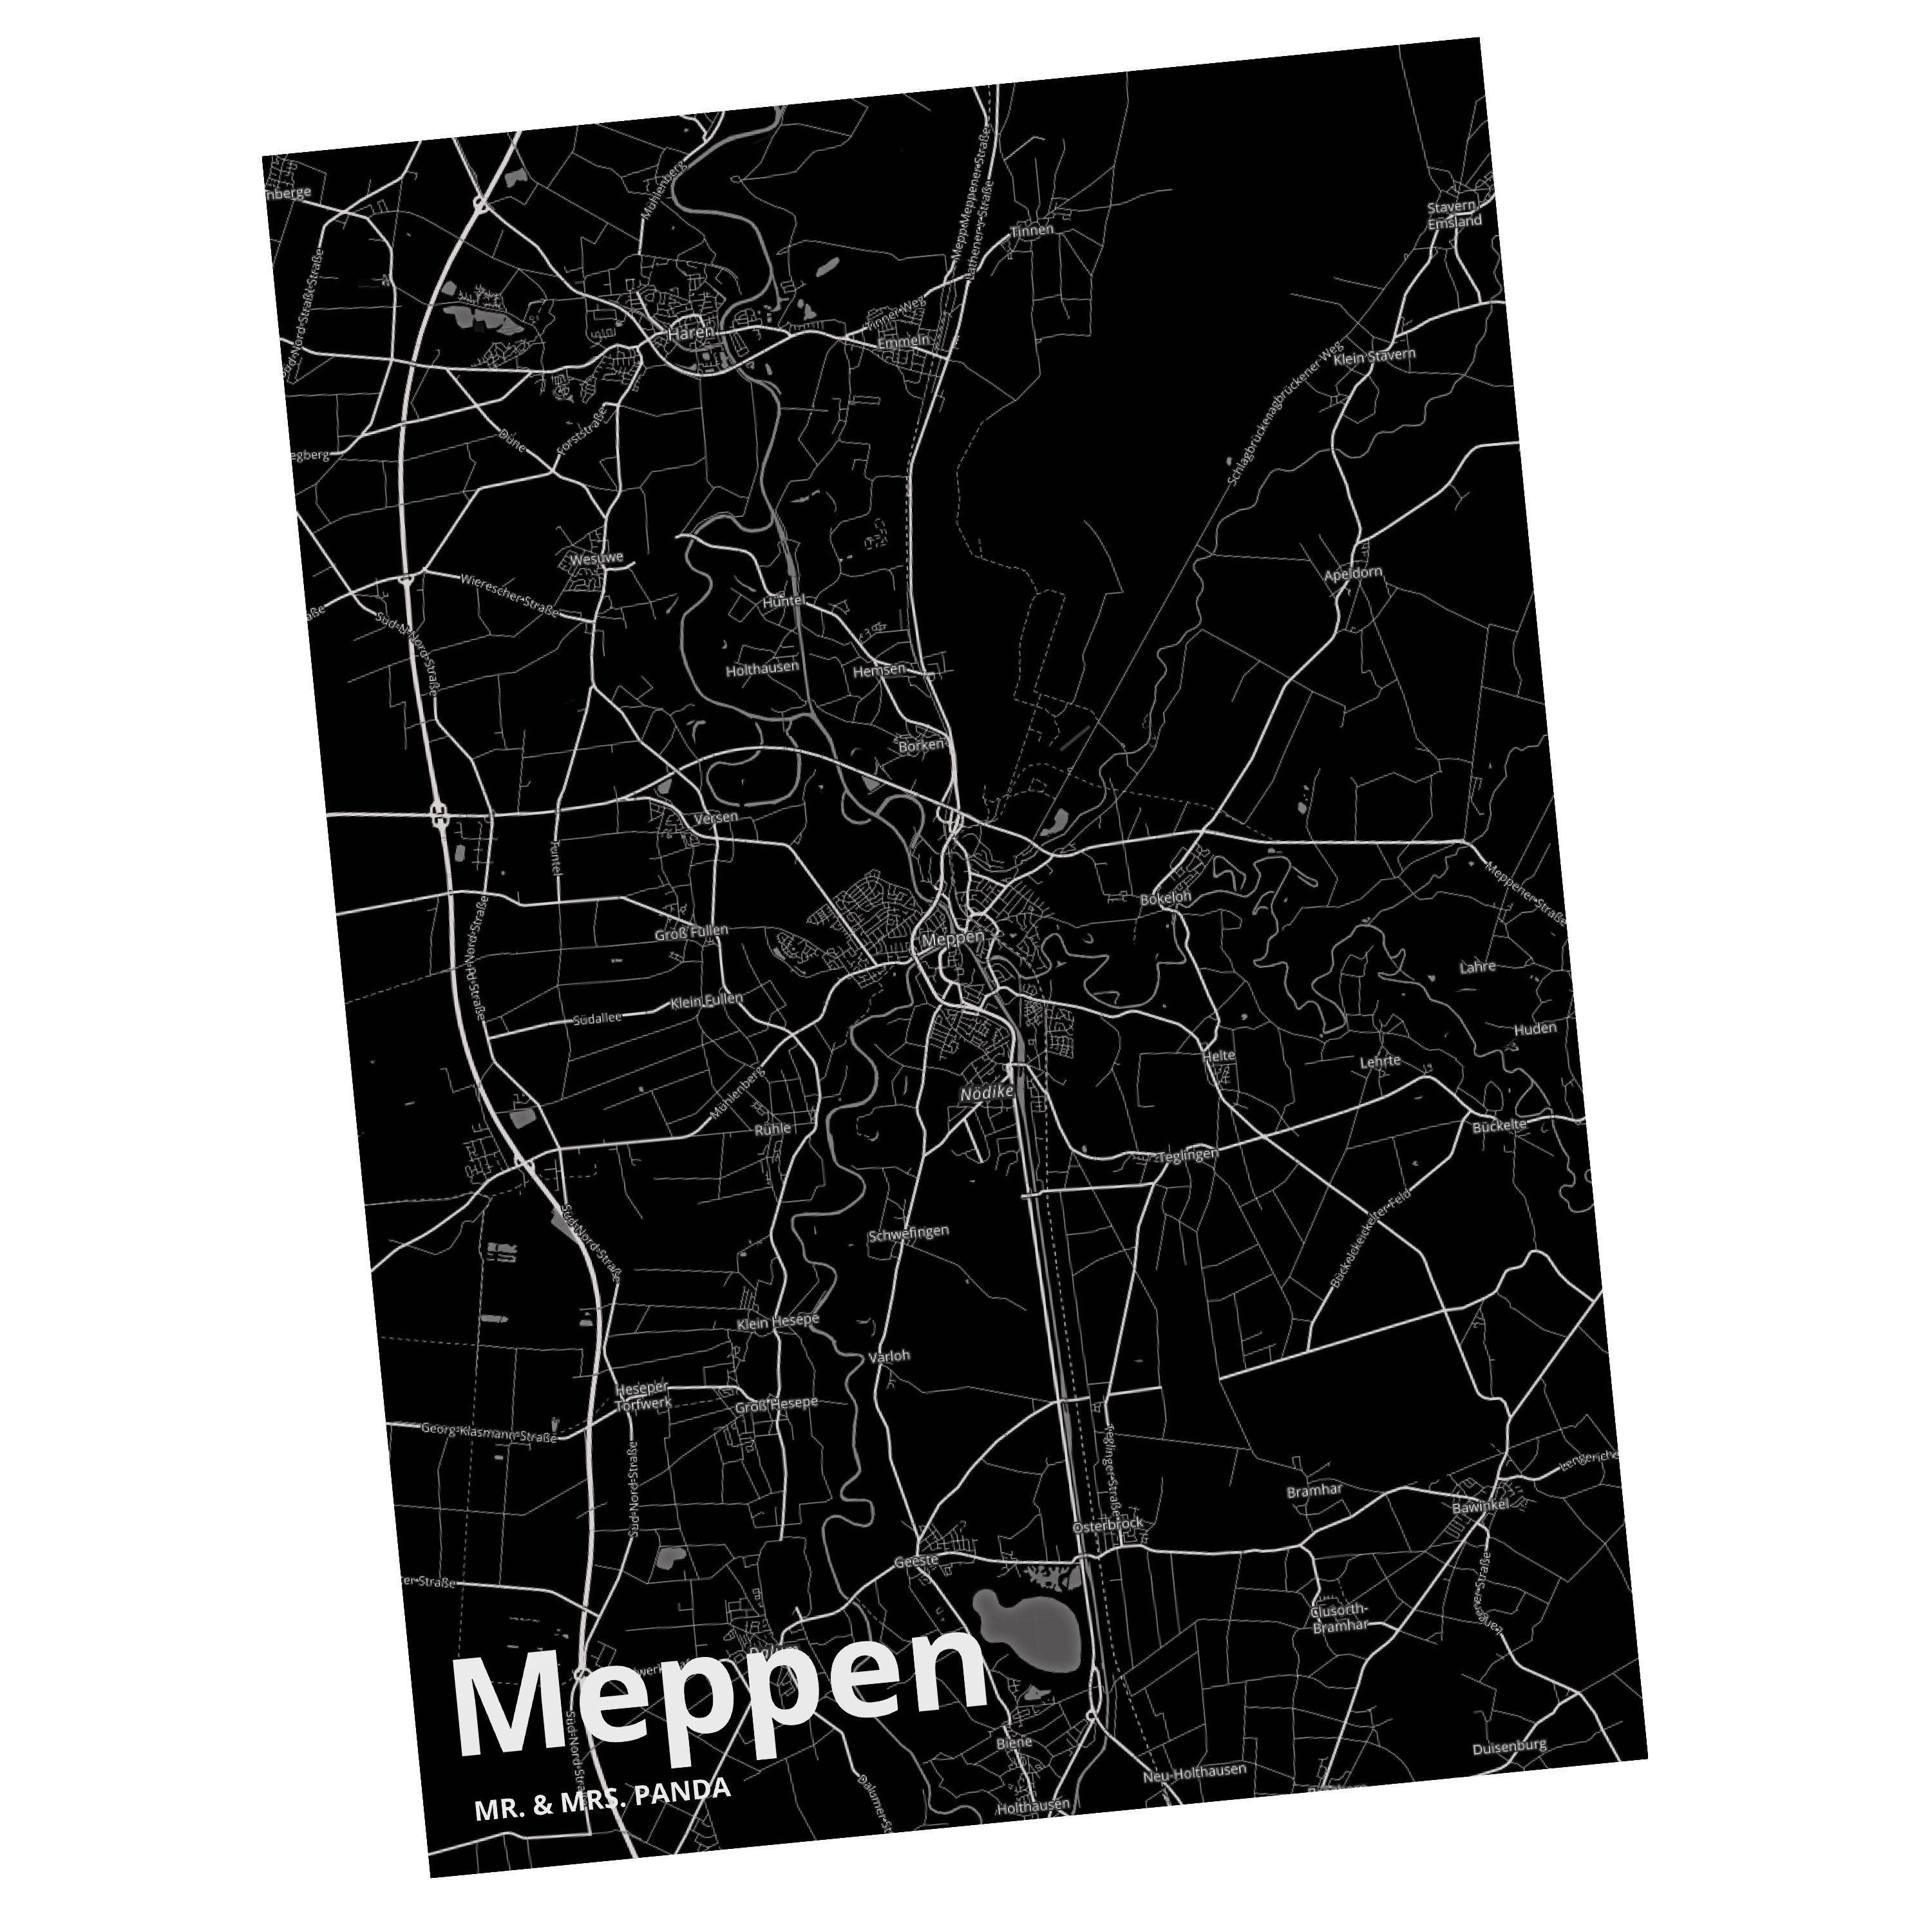 Mr. & Mrs. Panda Postkarte Meppen - Geschenk, Ort, Stadt Dorf Karte Landkarte Map Stadtplan, Ges